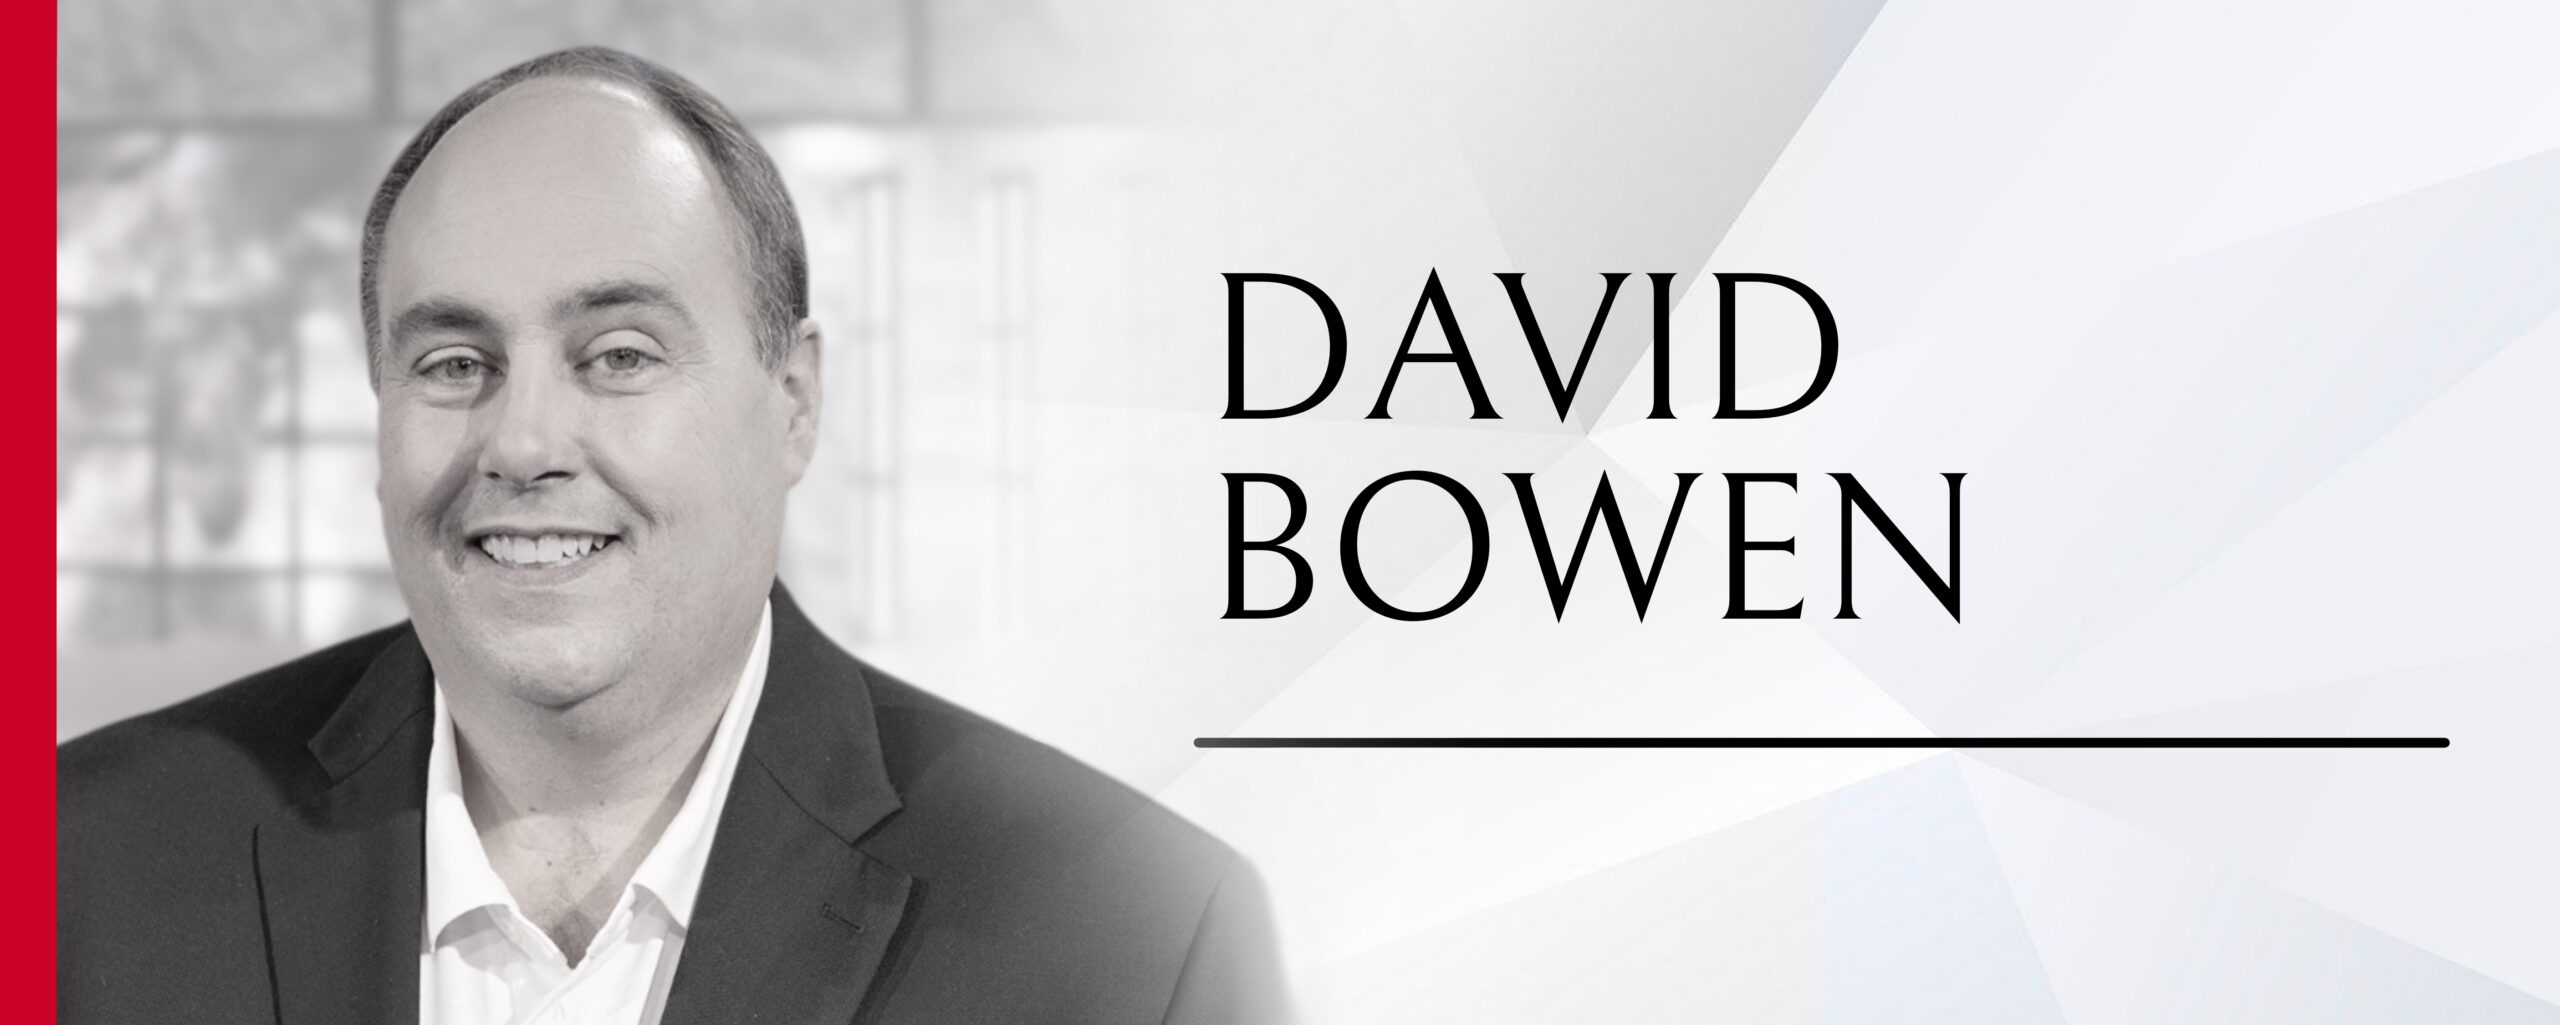 David Bowen